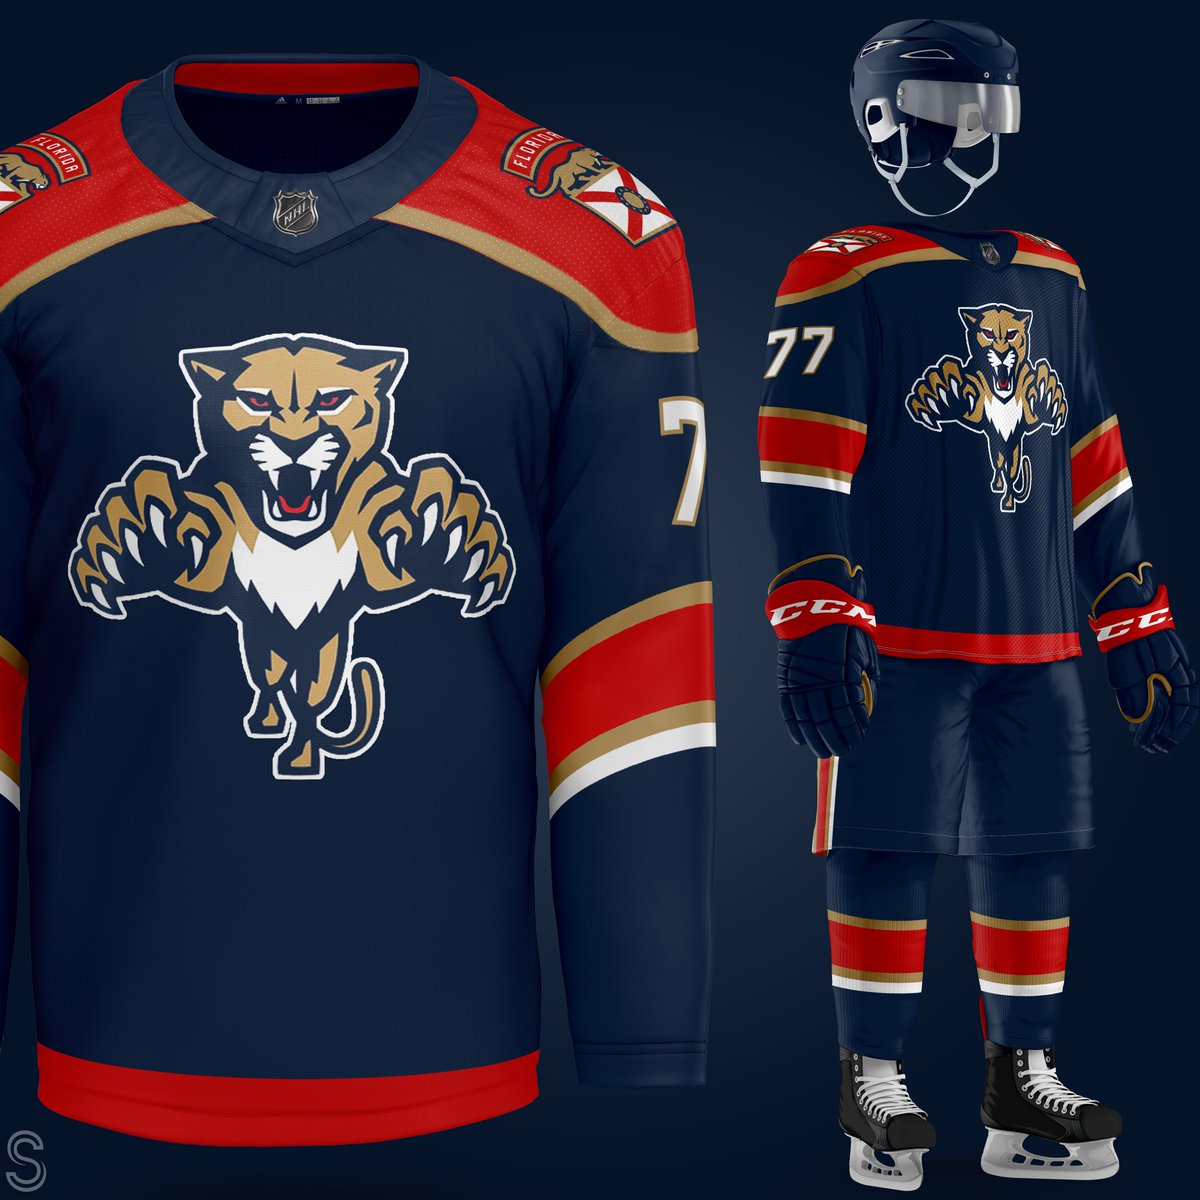 RT @SaturnStylez: Florida Panthers uniform concepts! https://t.co/b7t5hvWlx3